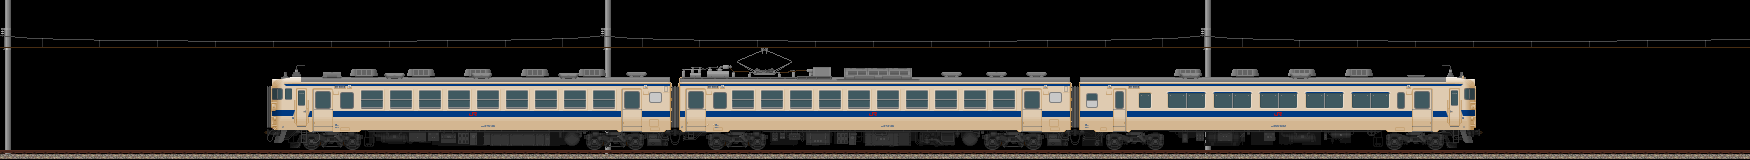 九州の475系電車(2011/11/26更新)